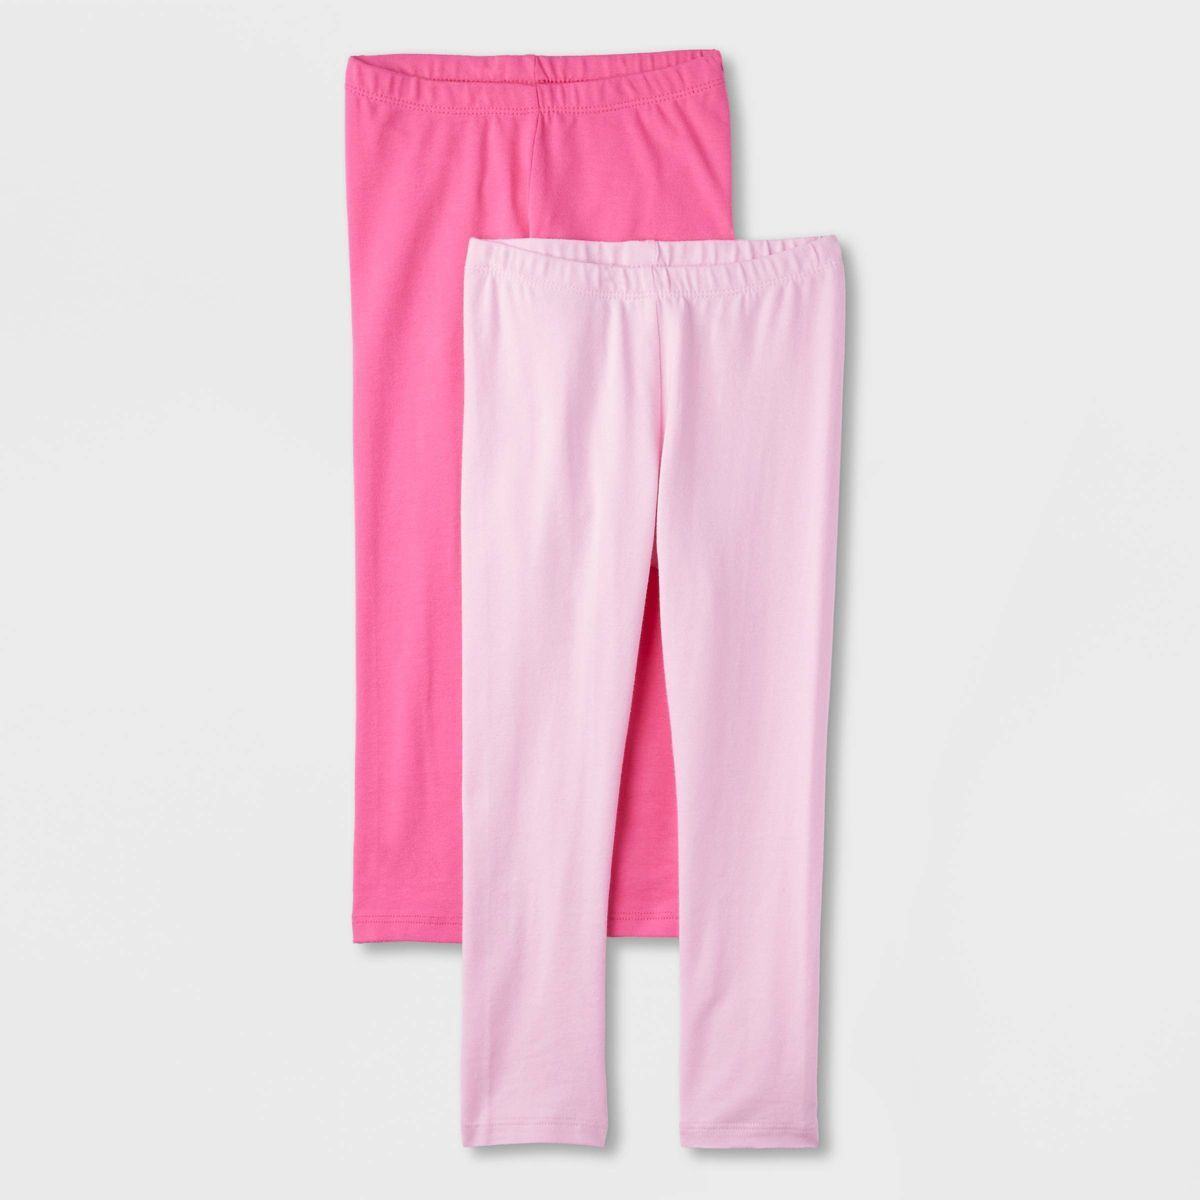 Toddler Girls' 2pk Leggings - Cat & Jack™ Pink/Light Pink | Target